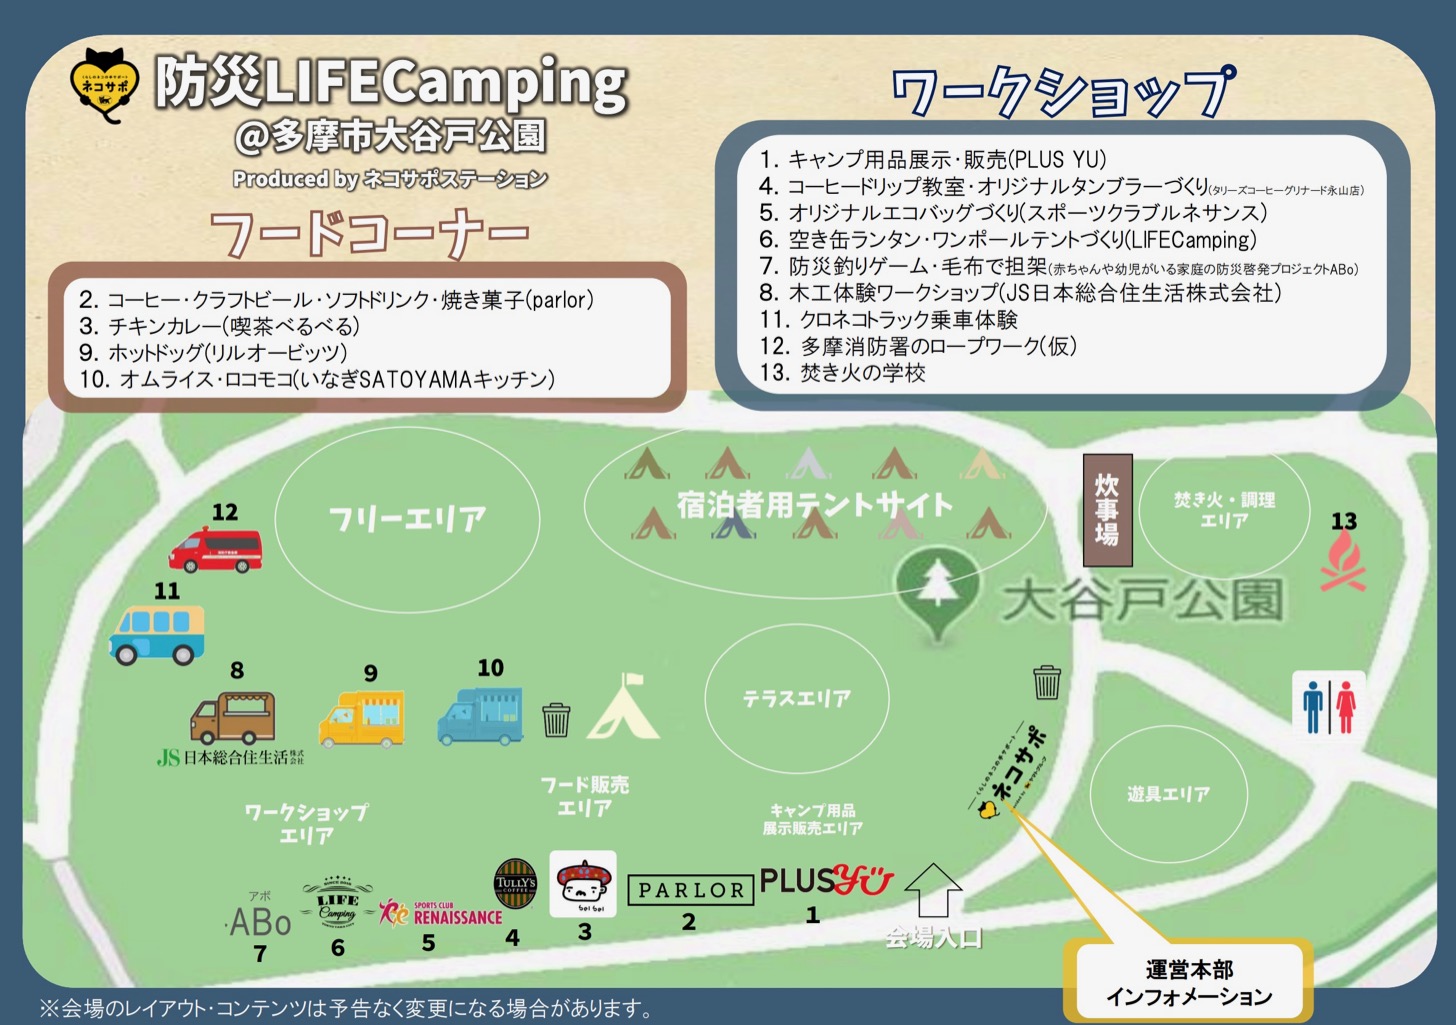 防災LIFECamping@多摩市大谷戸公園 Produced by ネコサポステーション